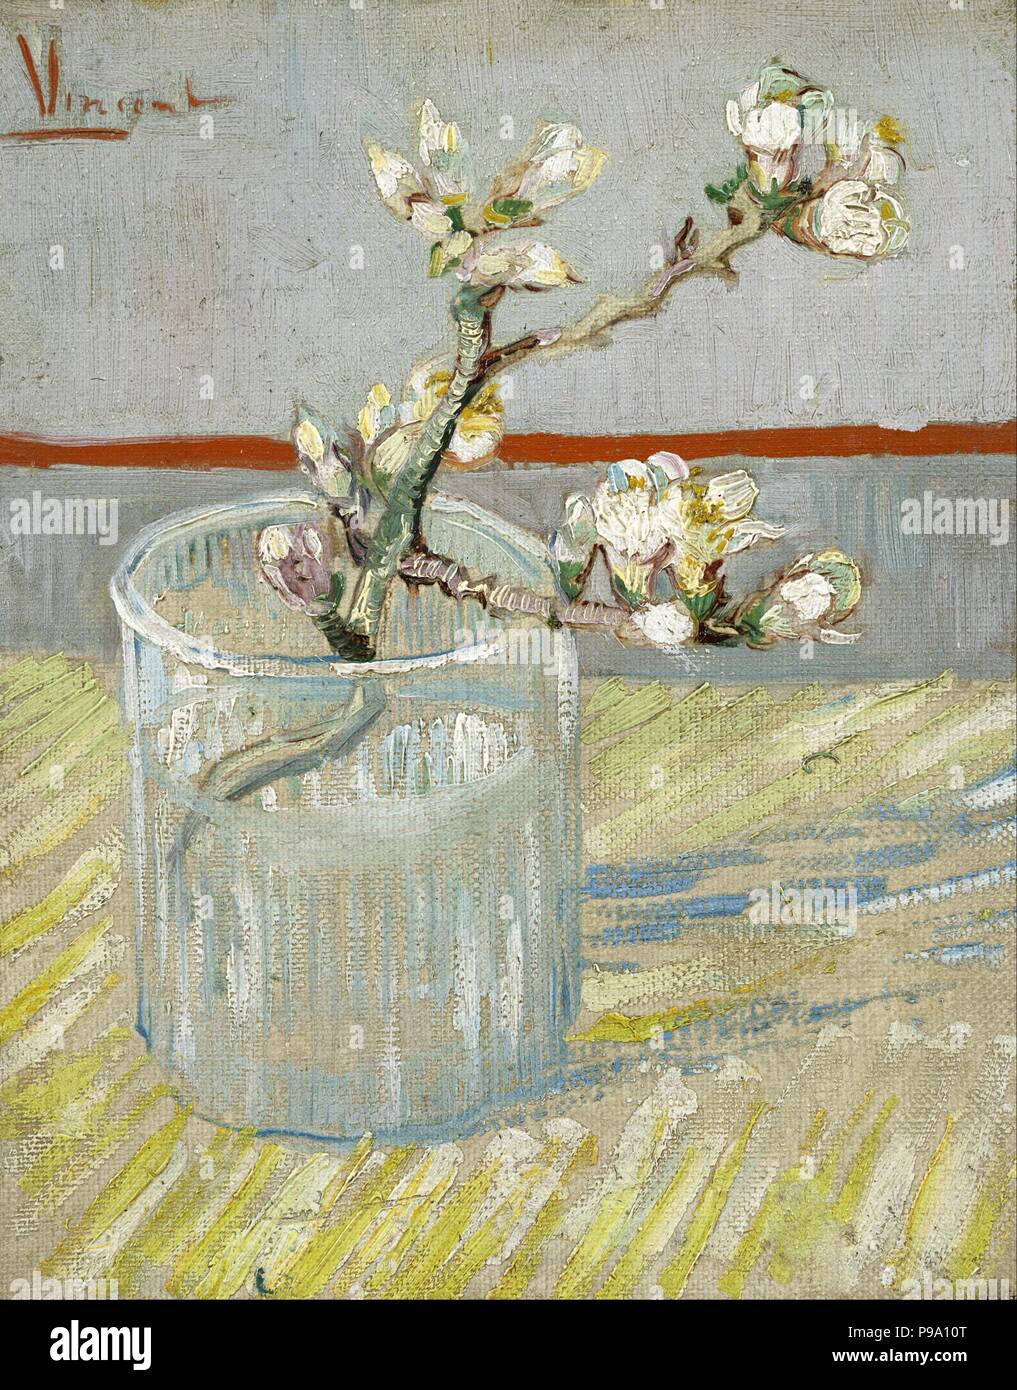 Bouquet de fleur d'amandier en fleurs dans un verre. Musée : Musée Van Gogh, Amsterdam. Banque D'Images